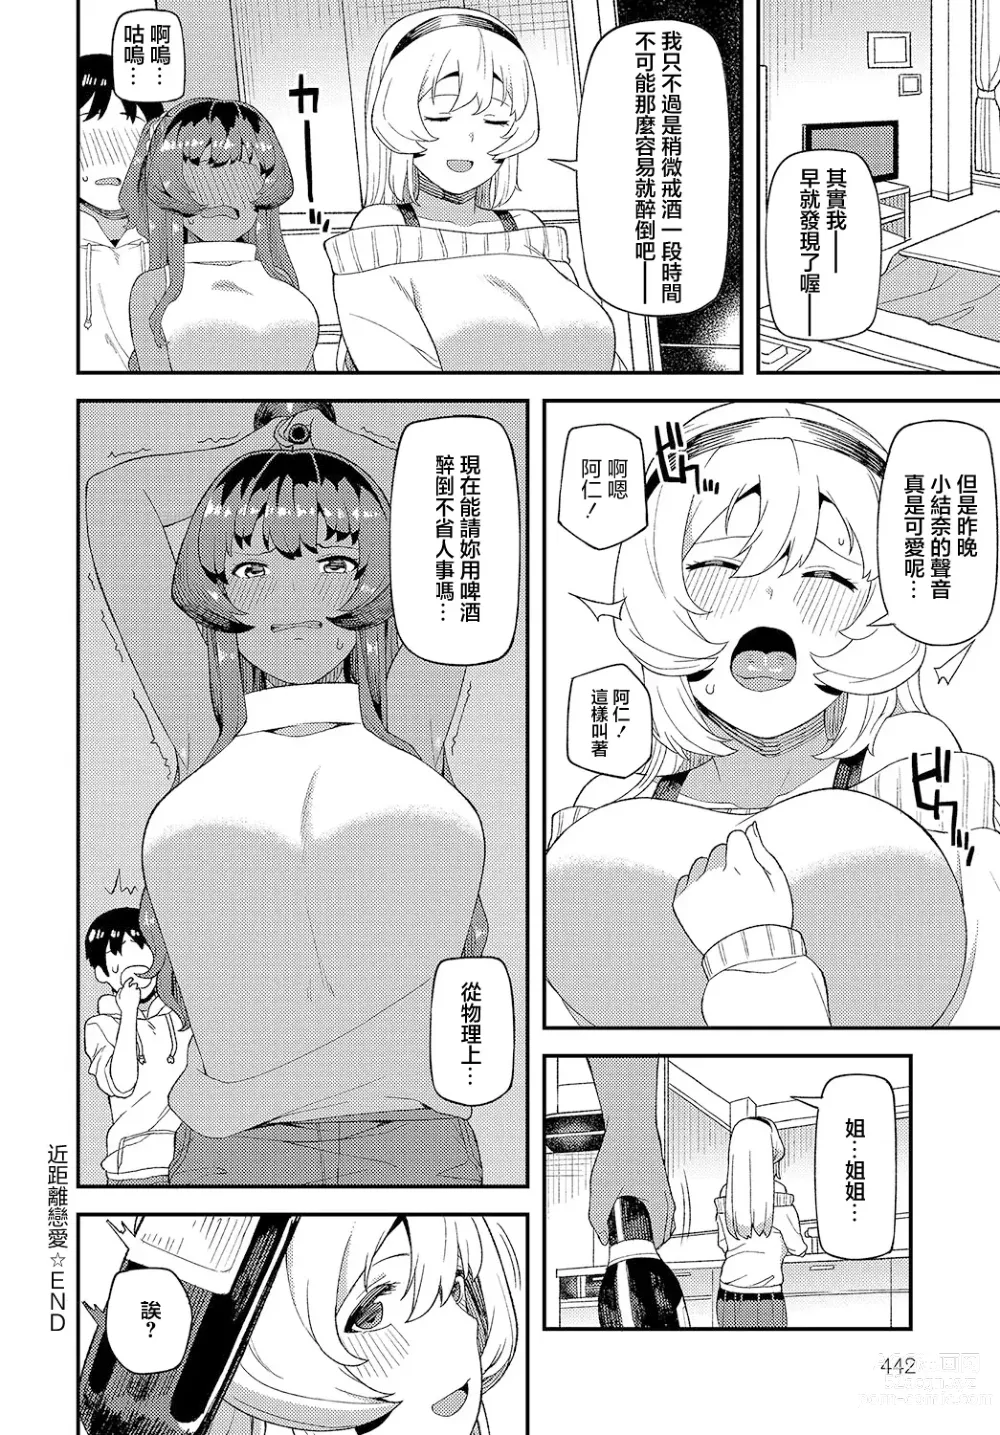 Page 27 of manga Shinkinkyori Renai